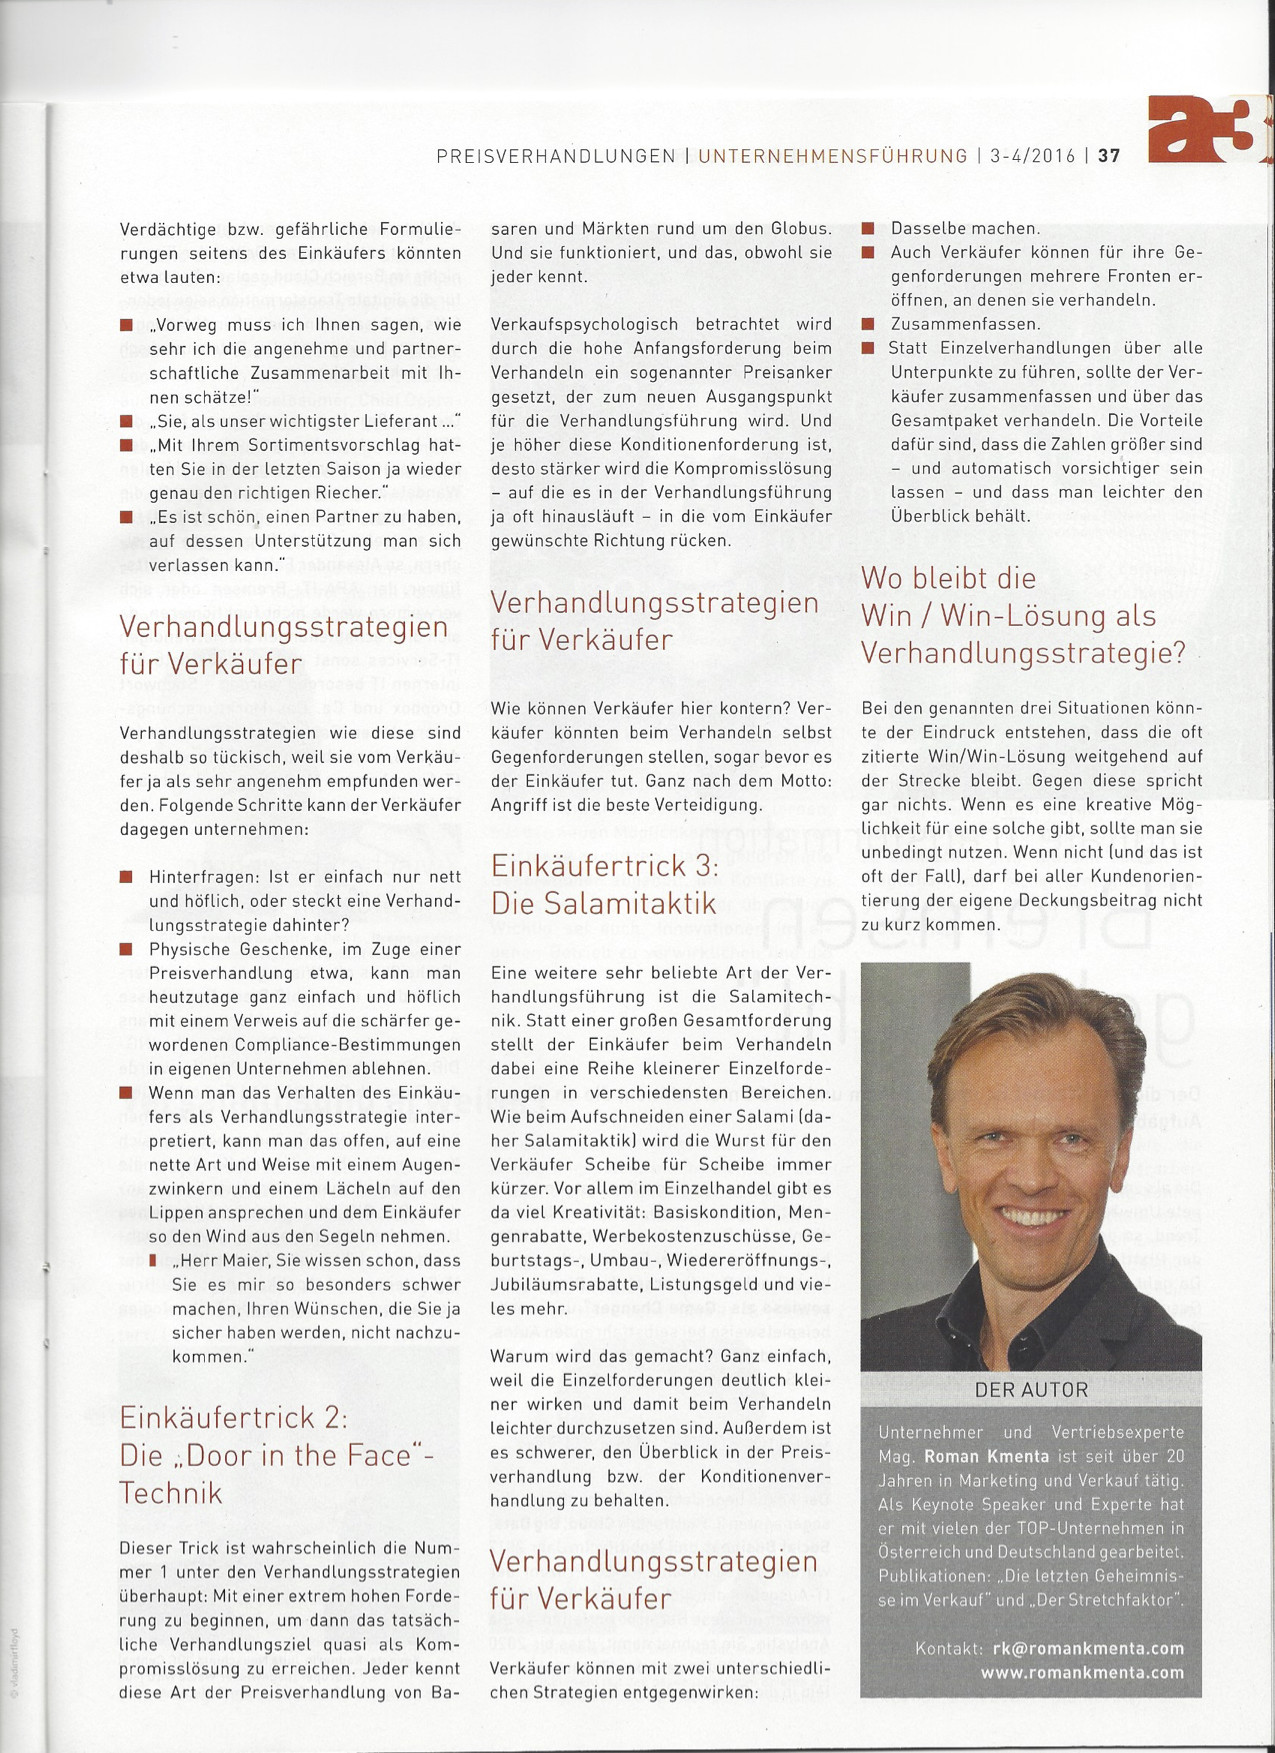 Tückische Taktiken Seite 2 - a3 ECO Magazin 03/2016 - Roman Kmenta - Vortragsredner und Autor